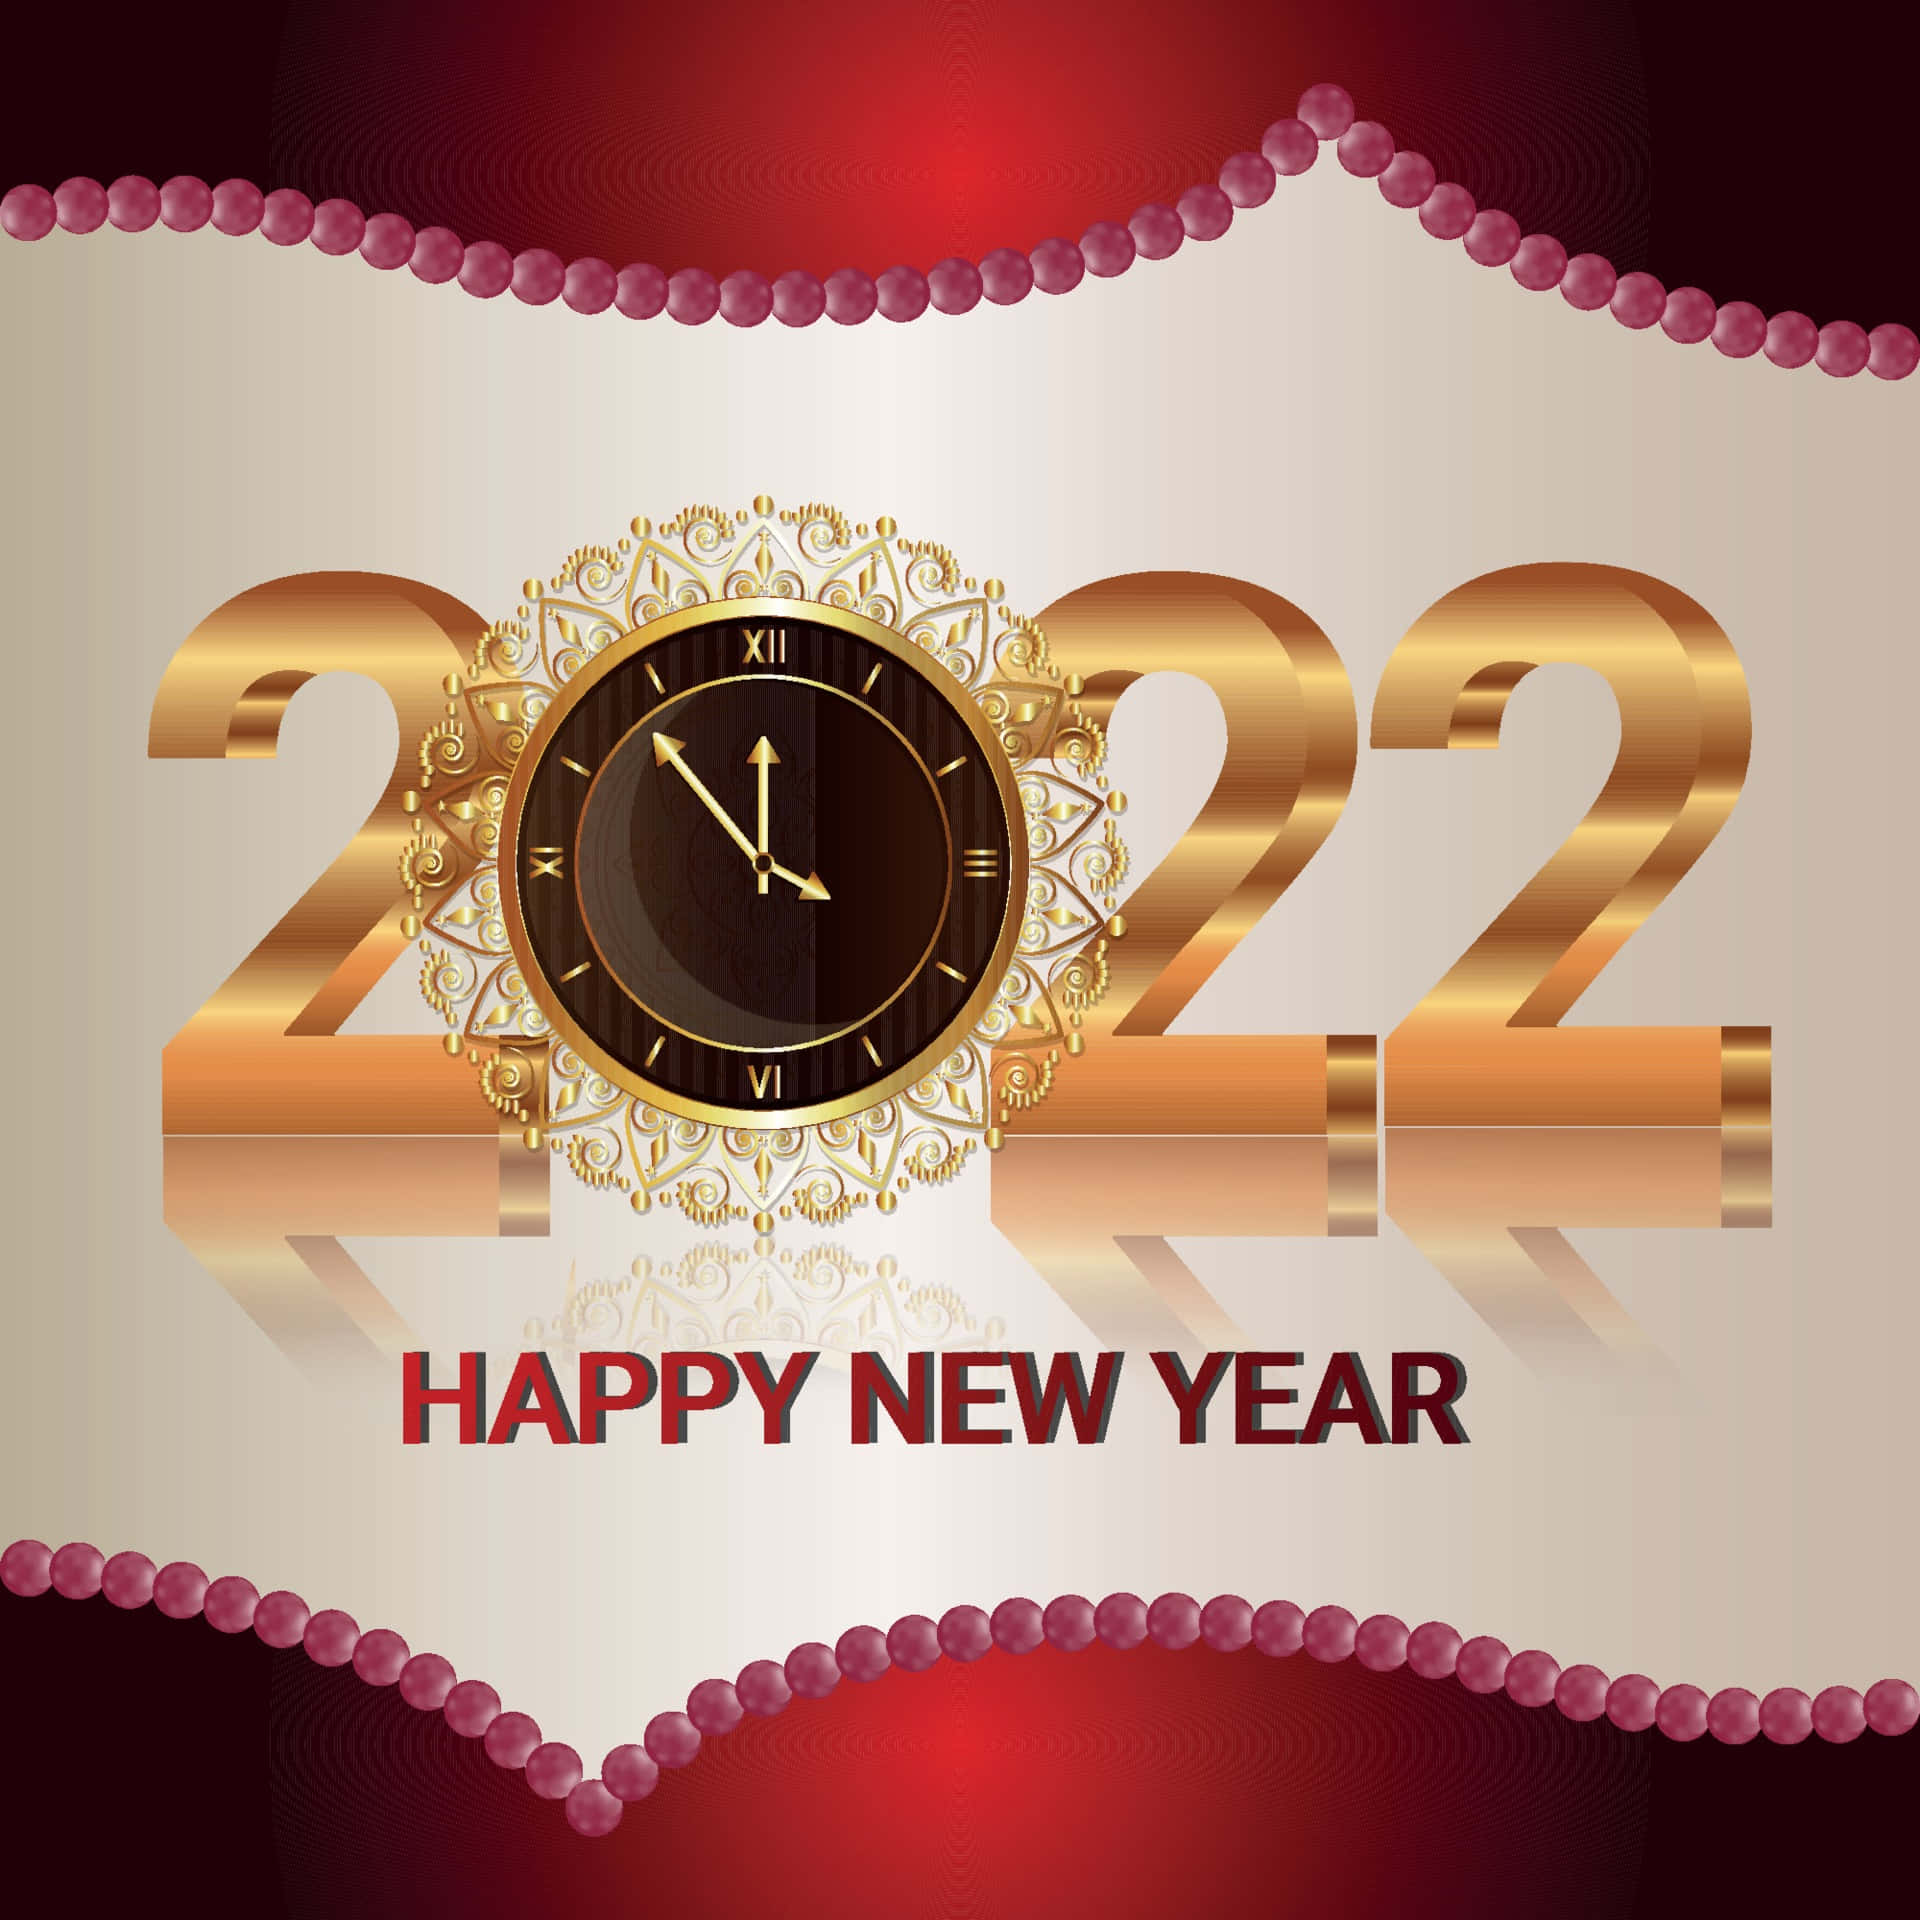 Nytårsfestlighedernebegynder Med Et Glædeligt 2022!